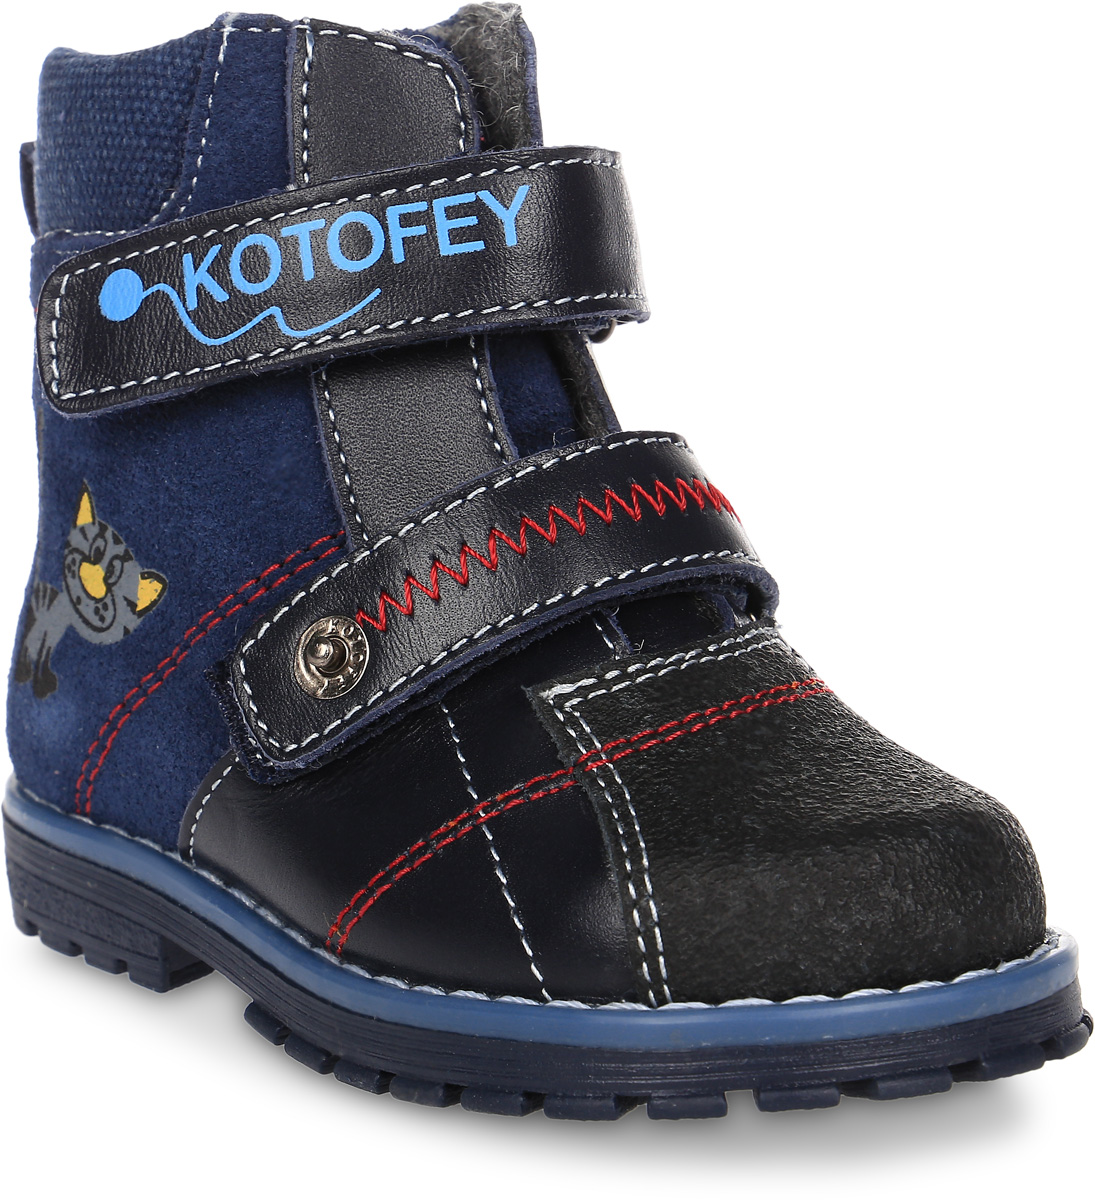 Ботинки для мальчика Котофей, цвет: синий. 152098-31. Размер 24